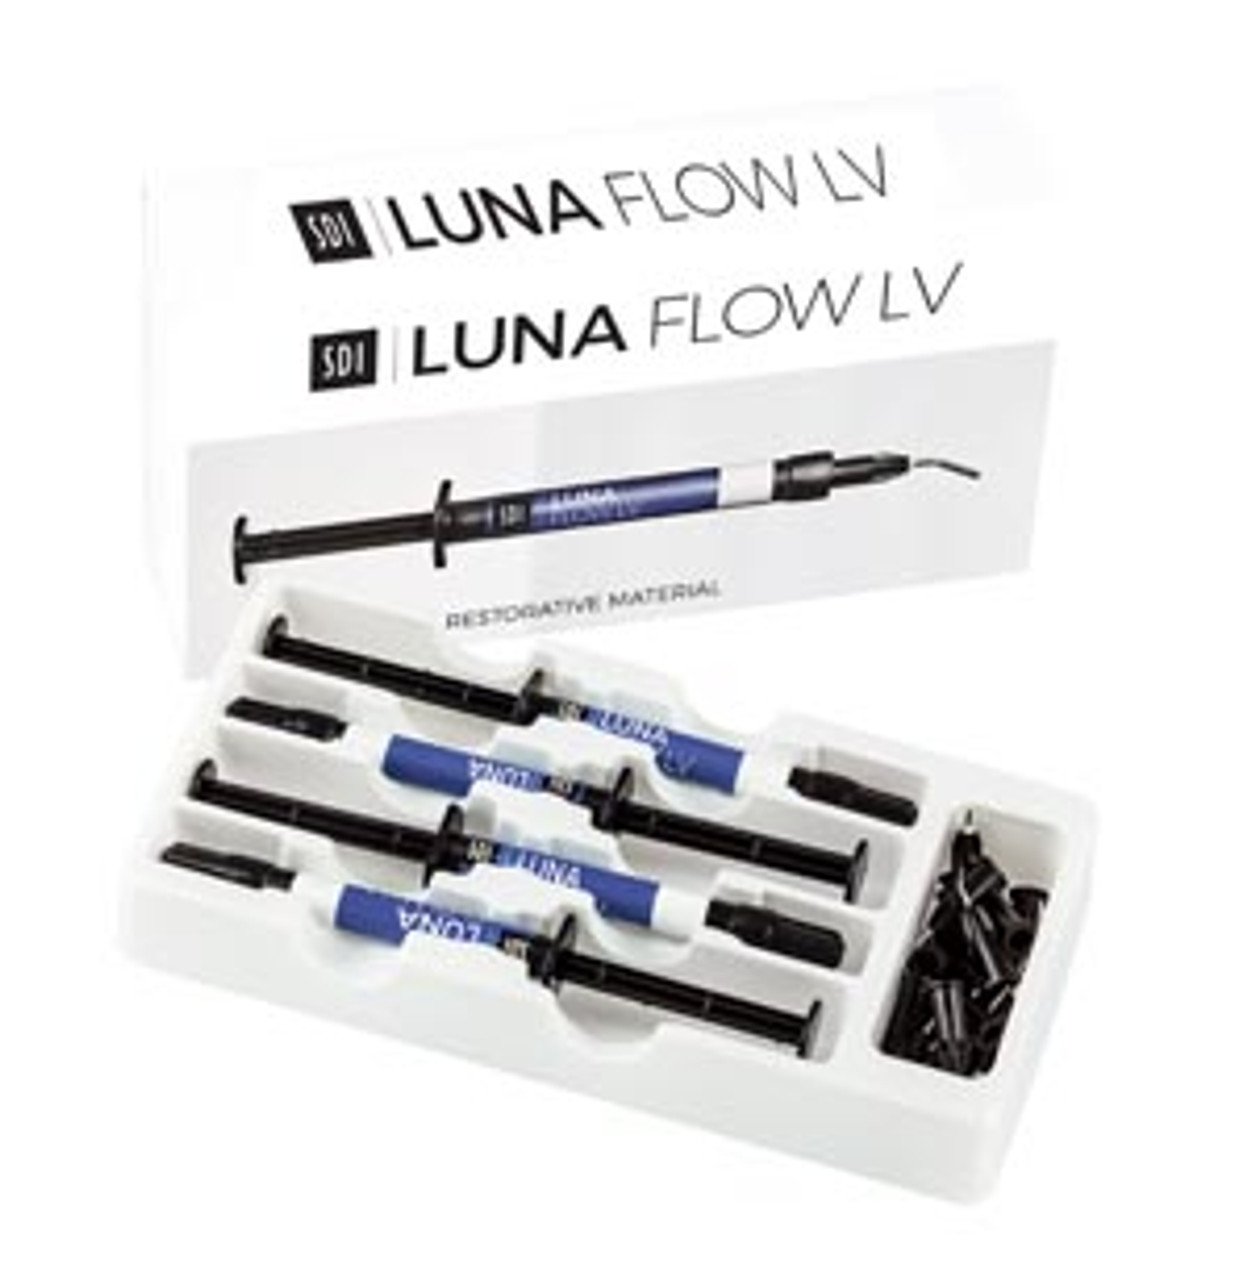 SDI Luna Flow Universal Flowable Composite, LV Intro Kit